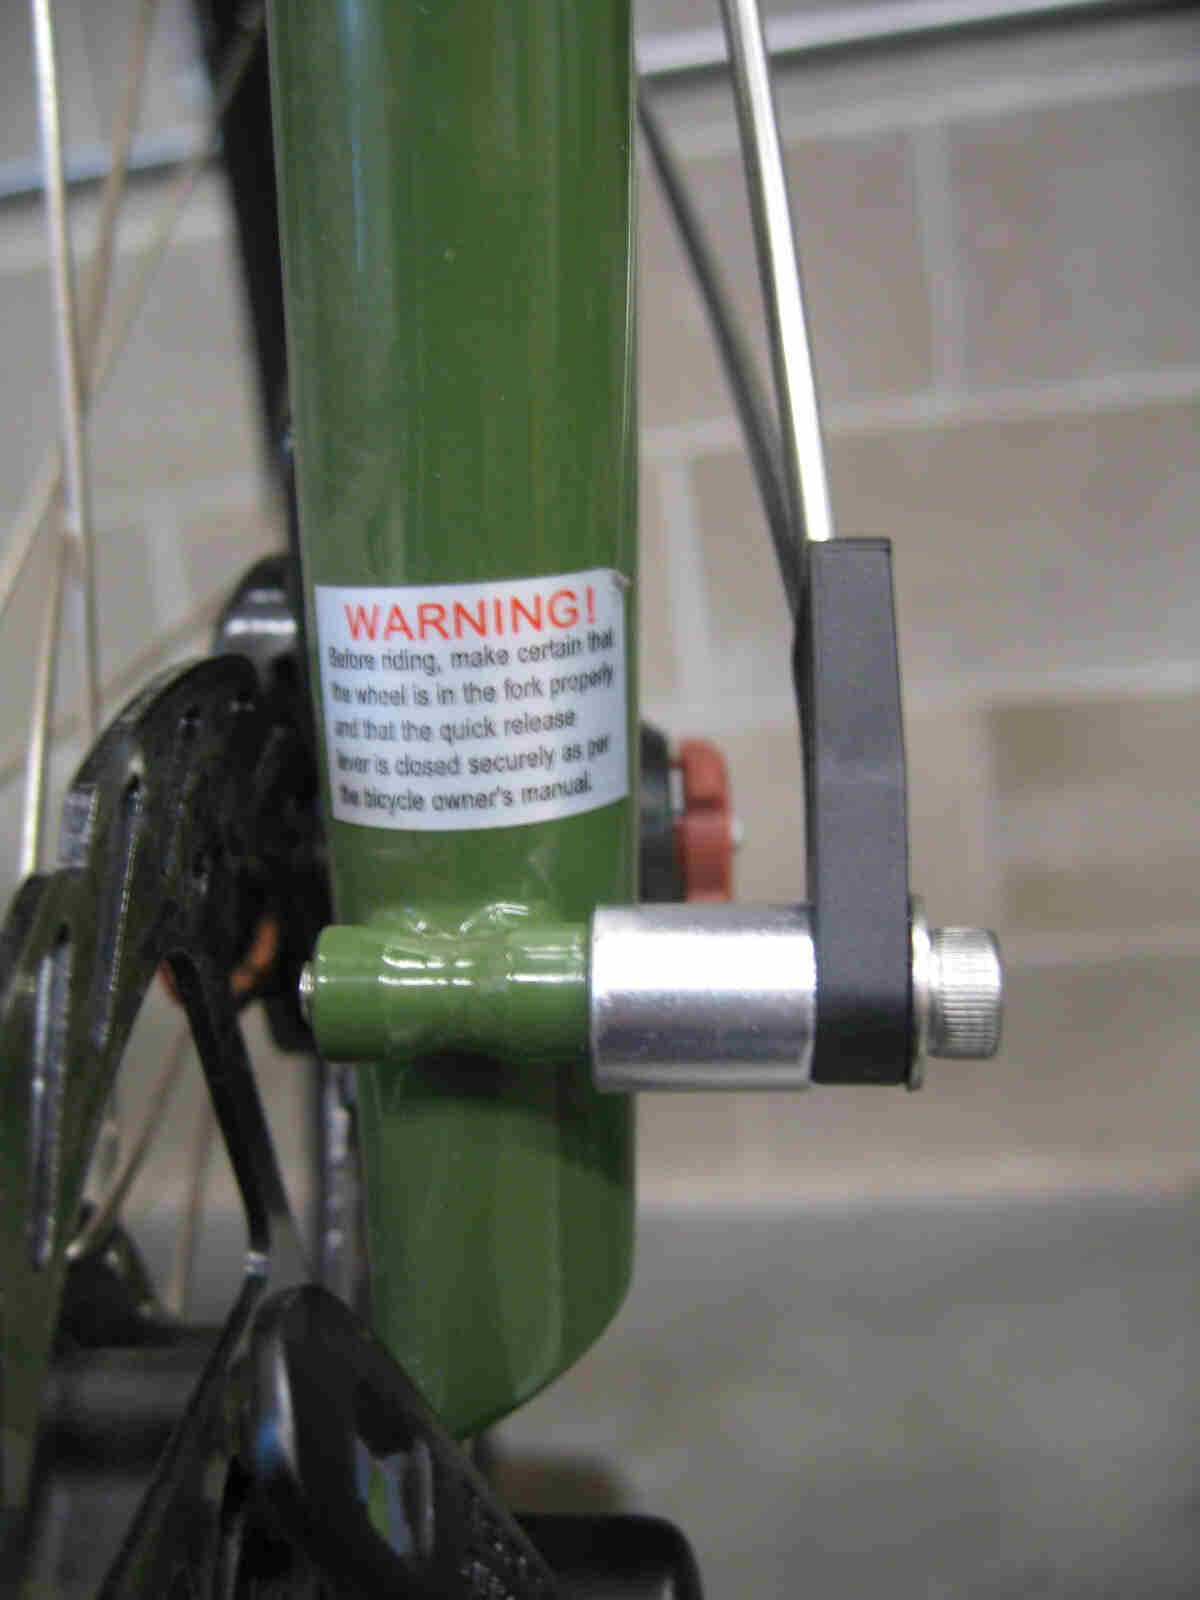 Surly Ogre bike - green - fork, front fender spacer nut detail - front, left side, close up view